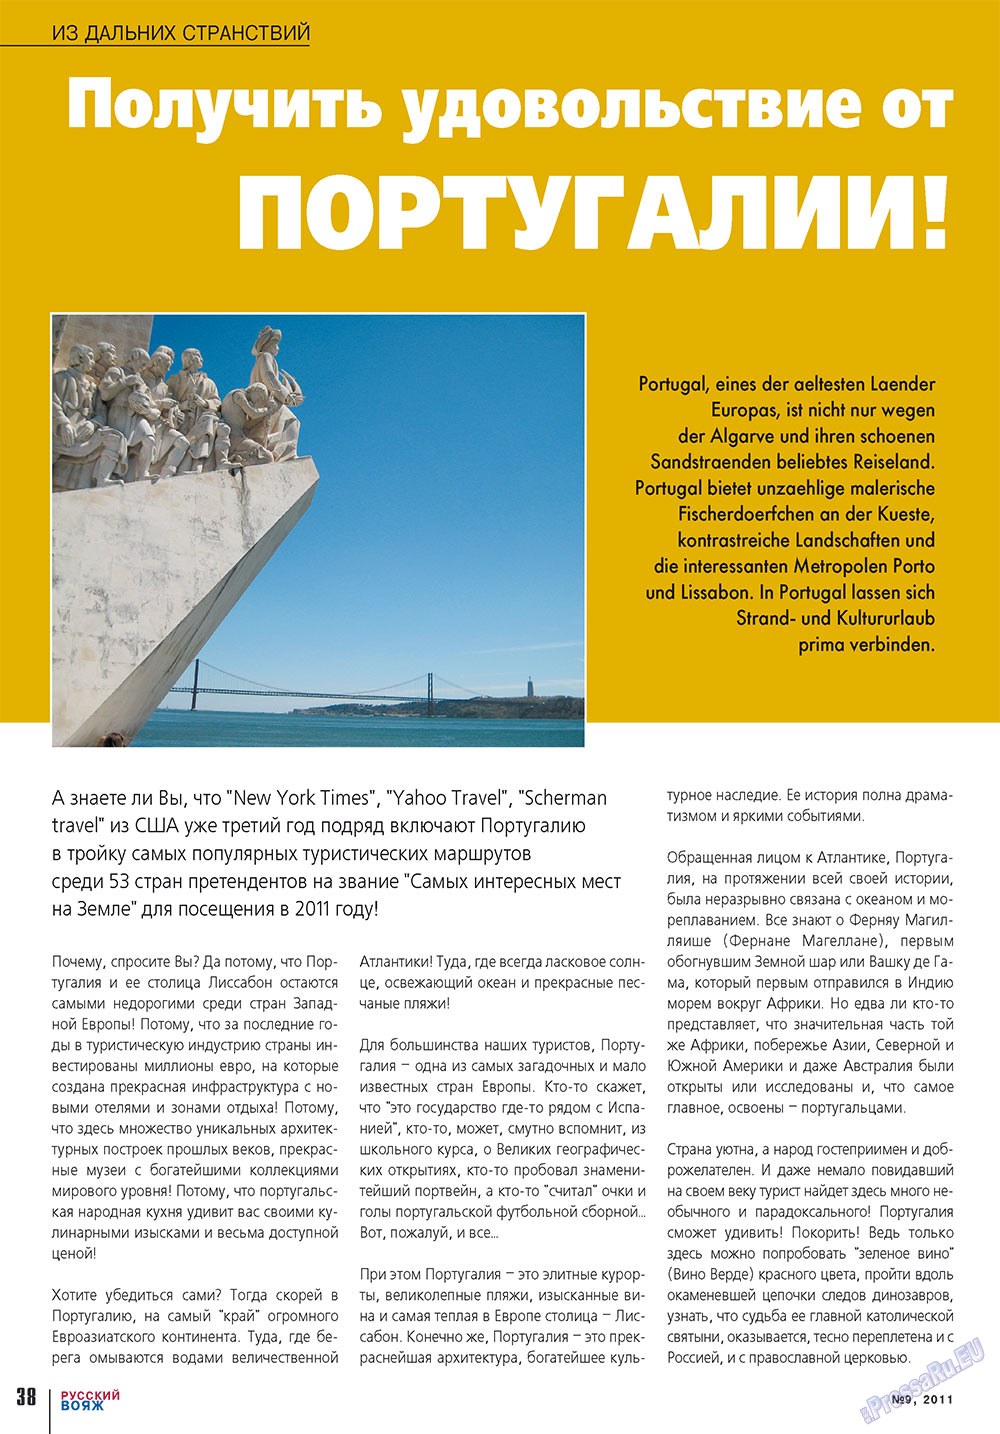 Русский вояж (журнал). 2011 год, номер 9, стр. 38